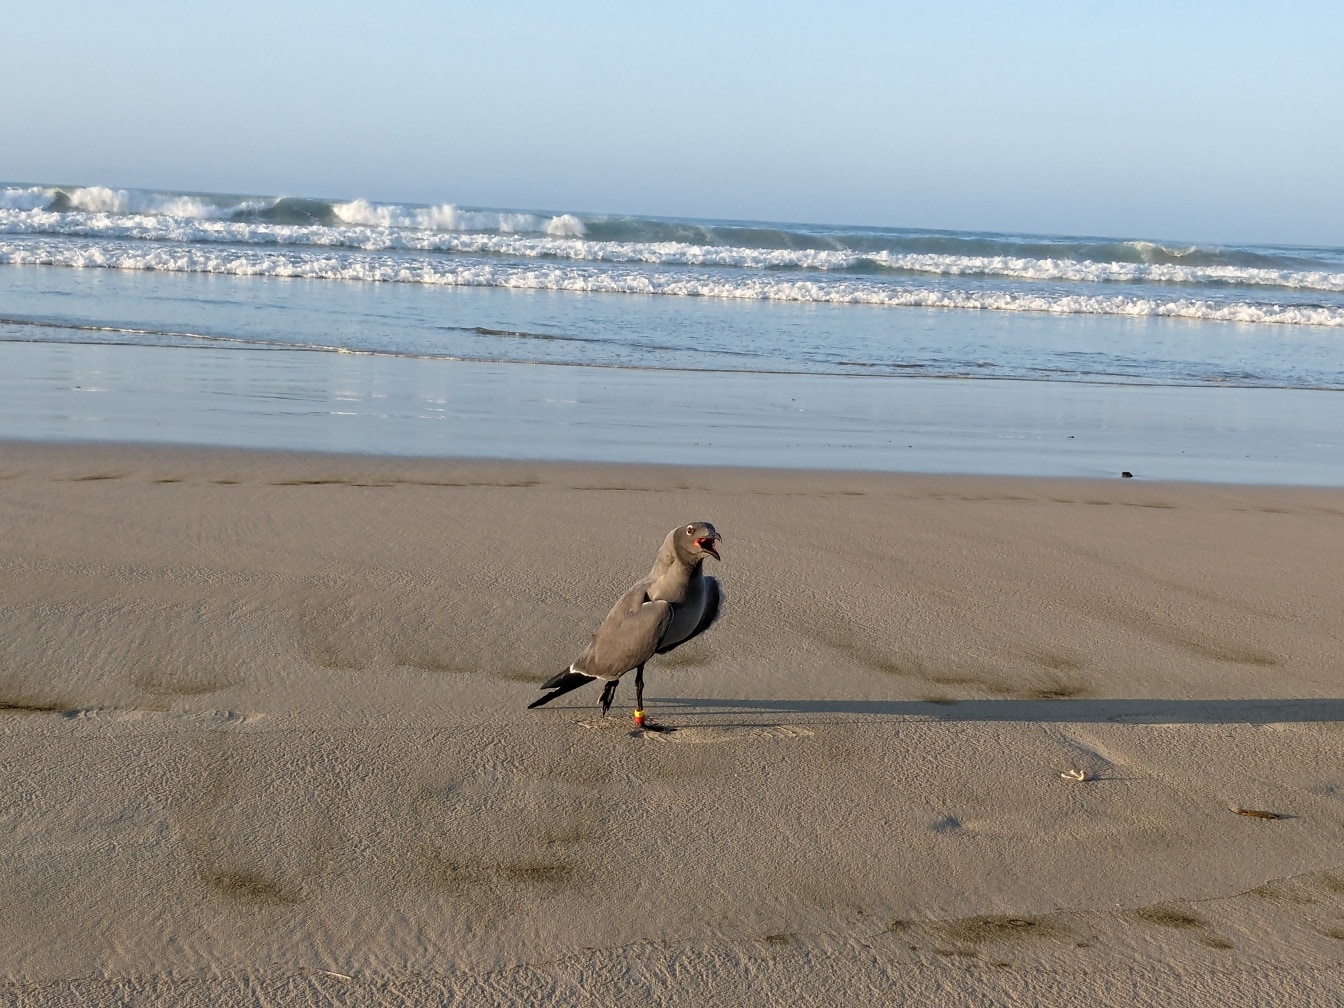 Mòng biển dung nham hay mòng biển dusky đứng trên bãi biển (Leucophaeus fuliginosus) một loài chim đặc hữu của quần đảo Galapagos